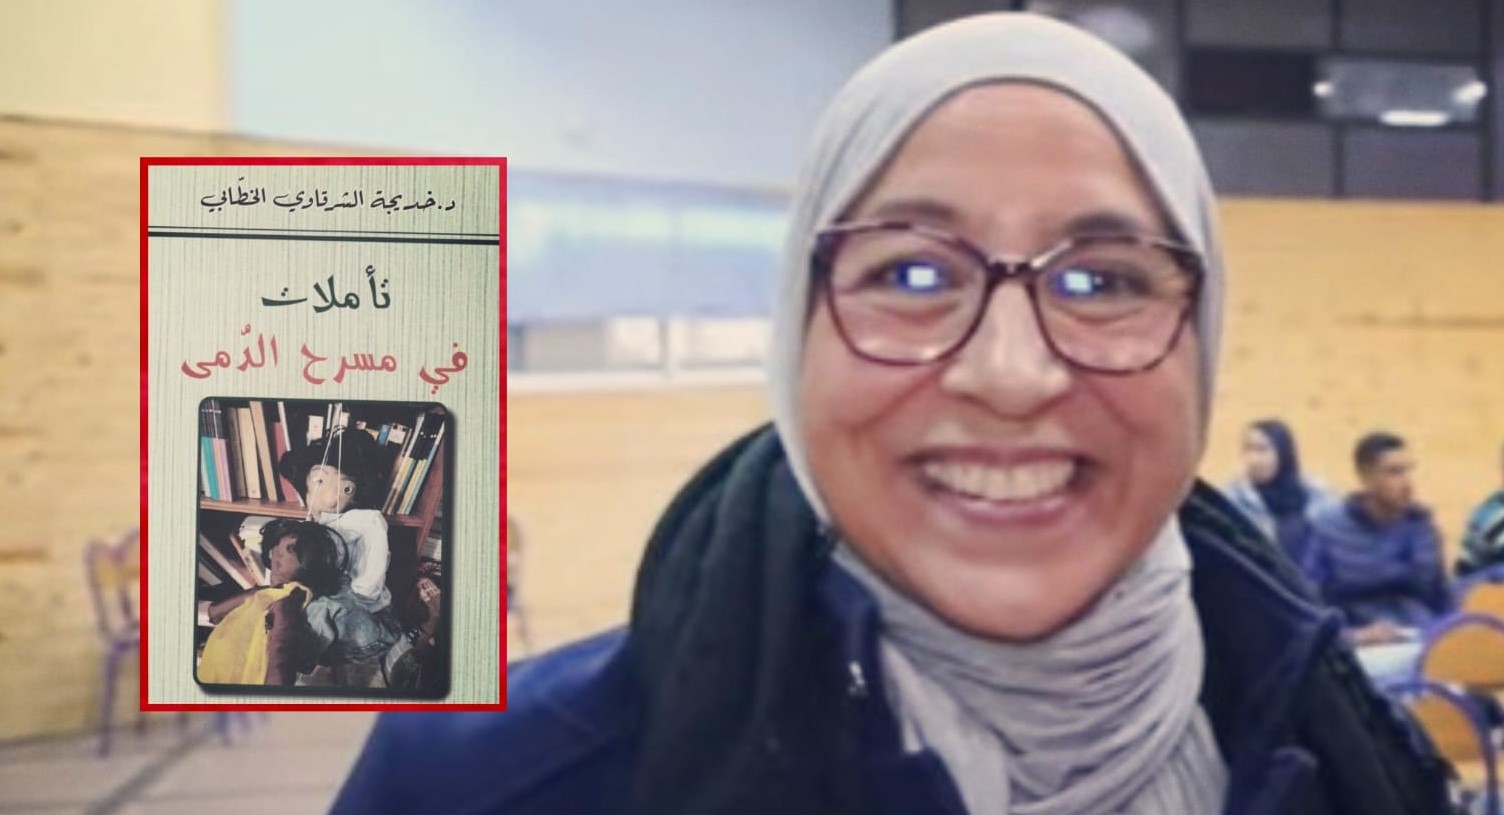 " تأملات في مسرح الدمى" كتاب جديد للأستاذة خديجة الشرقاوي الخطابي